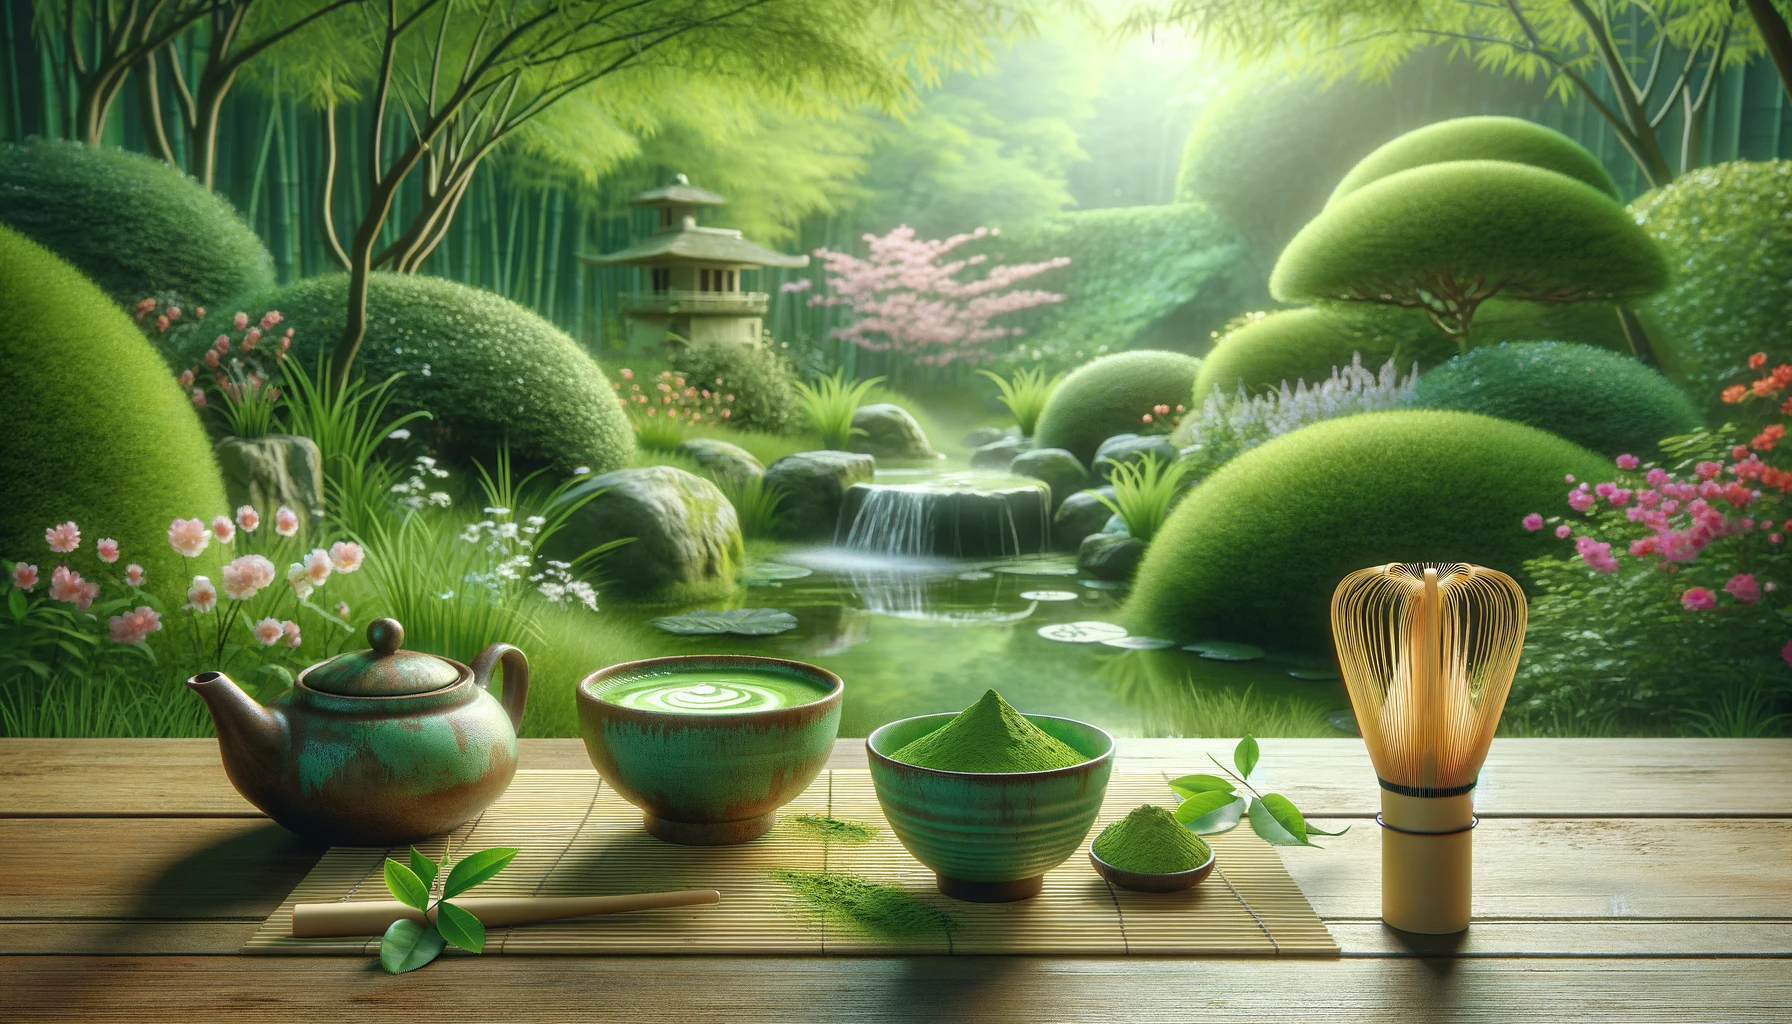 Un cadre de jardin serein avec un service à thé matcha traditionnel sur une natte de bambou, de la poudre de matcha vert vif et un fouet. Le jardin est luxuriant et symbolise la croissance